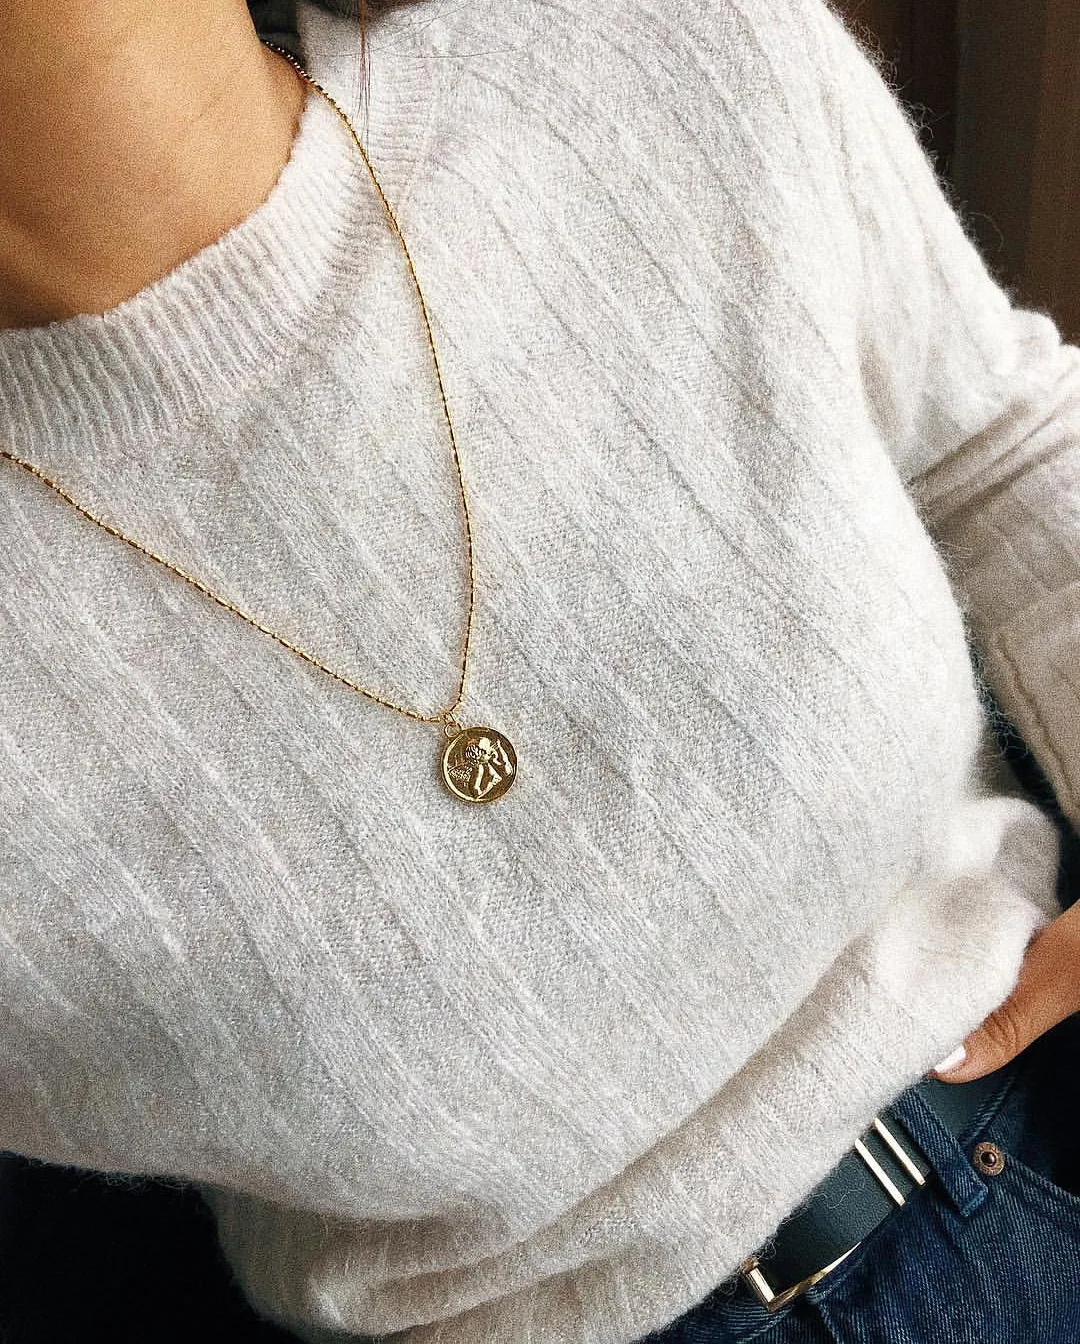 Abayabay Амура длинное ожерелье s ювелирные изделия для влюбленных Персонализированные Ангел Девушки серебряный цвет Трендовое ожерелье цепь женщины колье